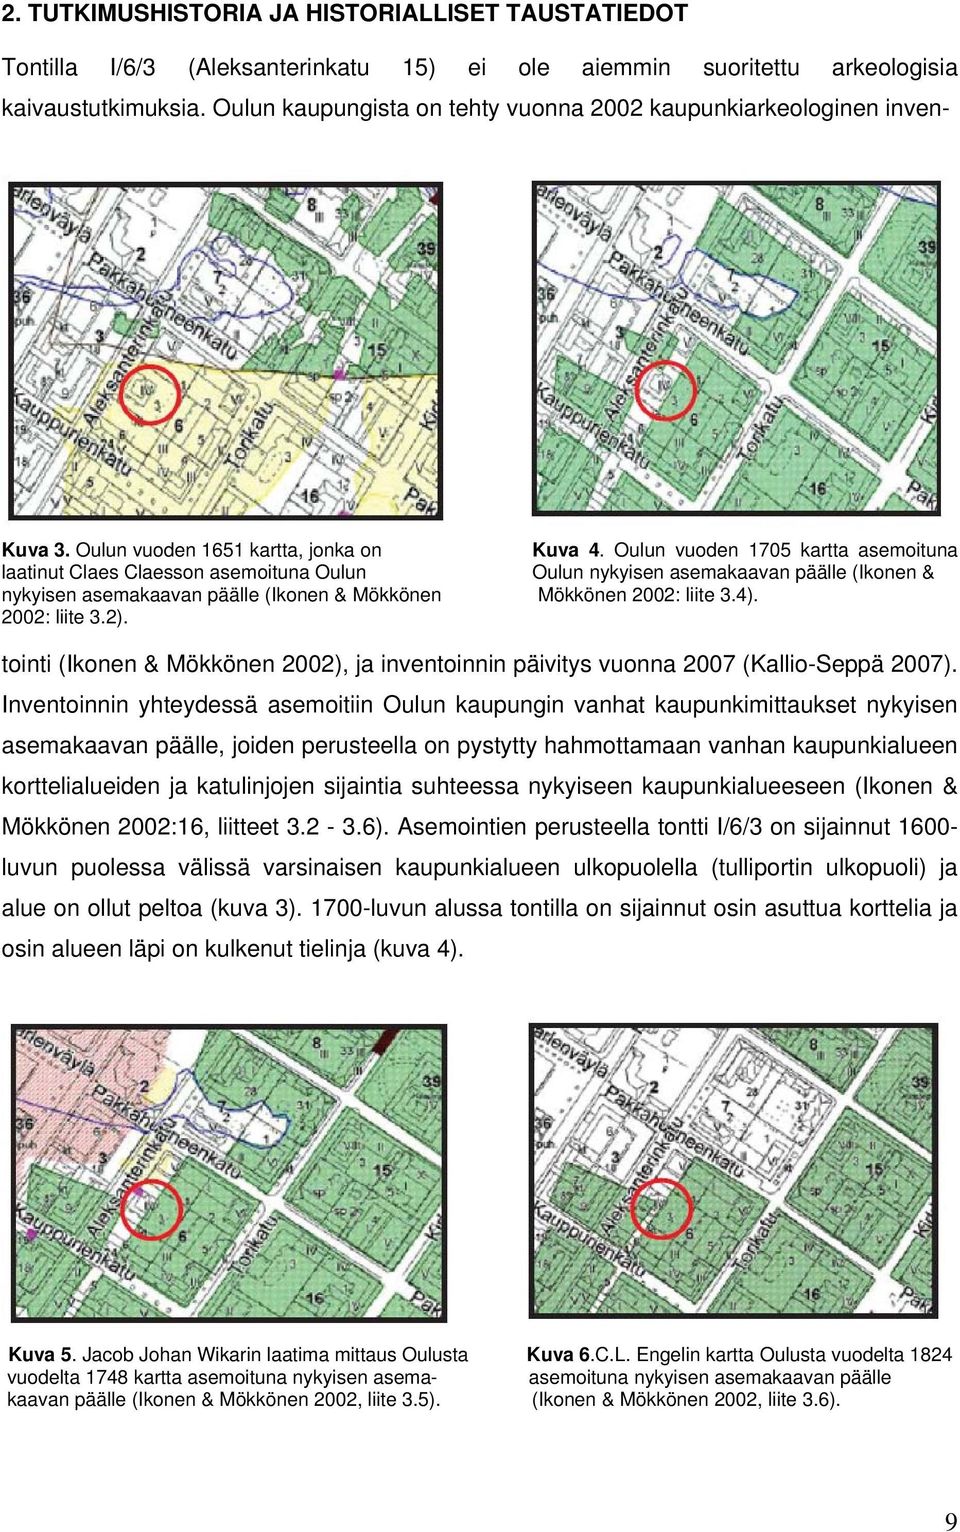 Oulun vuoden 1705 kartta asemoituna laatinut Claes Claesson asemoituna Oulun Oulun nykyisen asemakaavan päälle (Ikonen & nykyisen asemakaavan päälle (Ikonen & Mökkönen Mökkönen 2002: liite 3.4).